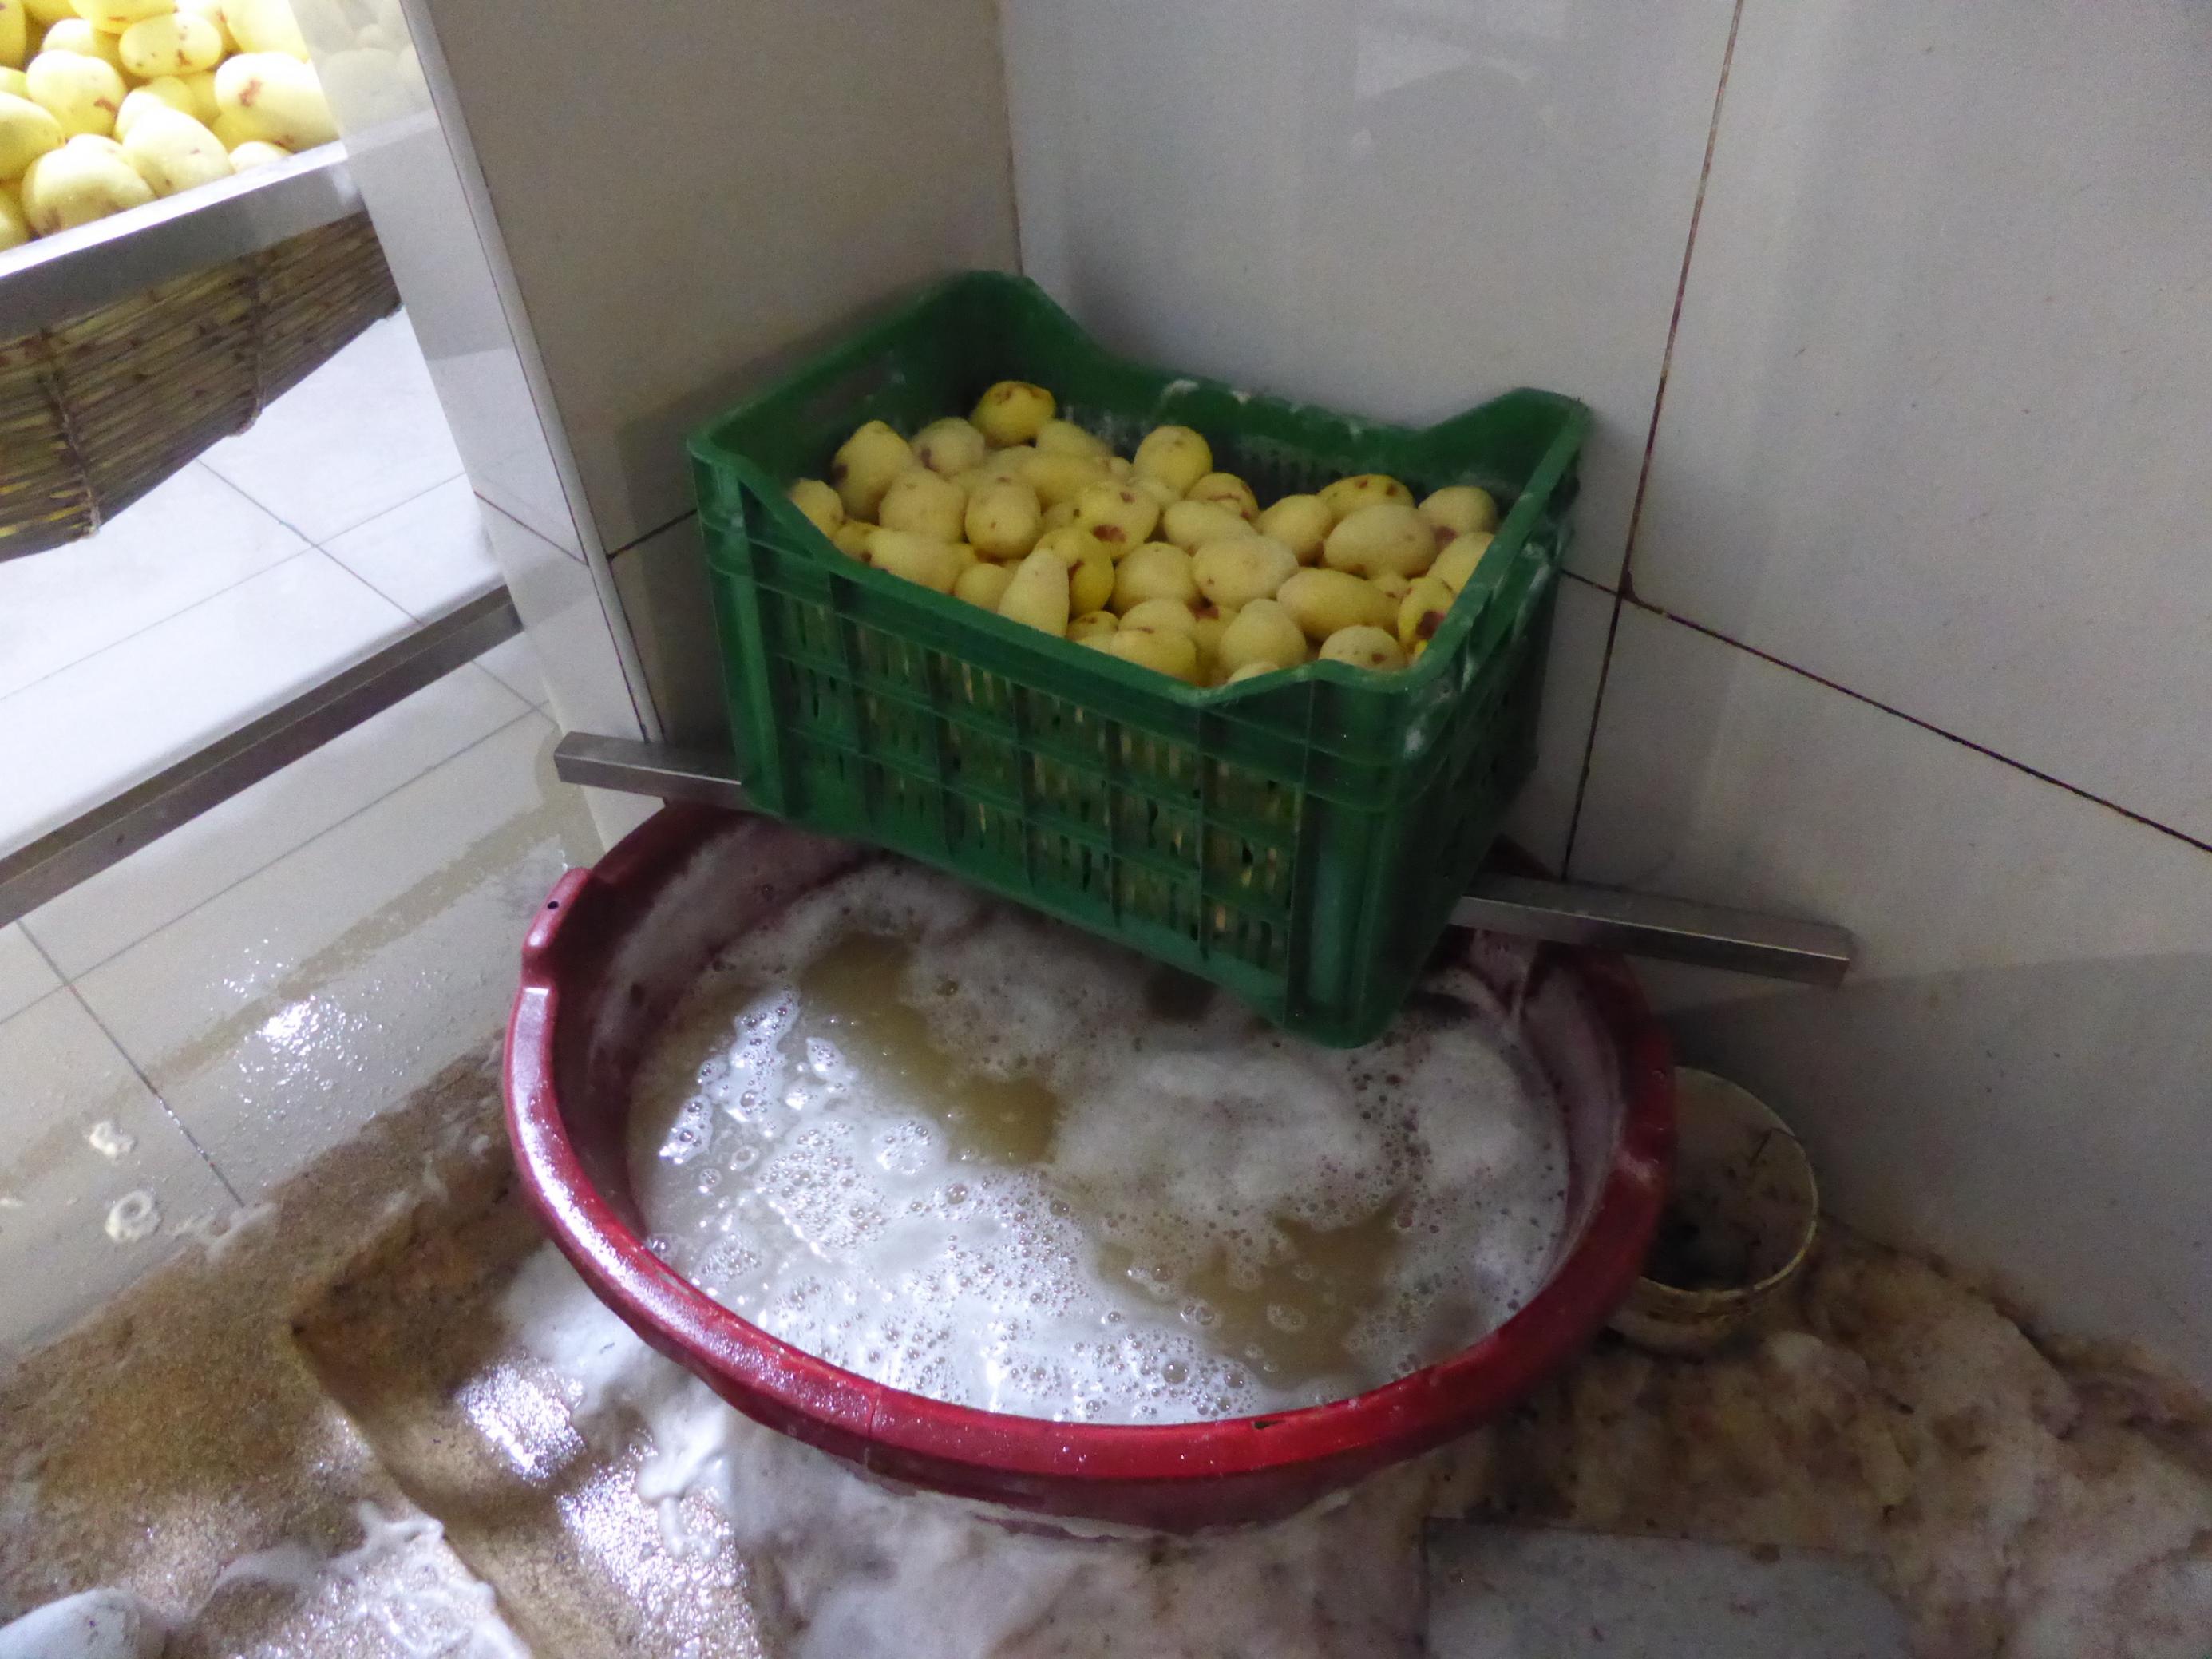 Ein Plastikkorb voller Kartoffeln und mit Öffnungen an den Seiten steht über einer Wanne, die fast voll mit gelblicher Flüssigkeit ist, auf der Schaum schwimmt.